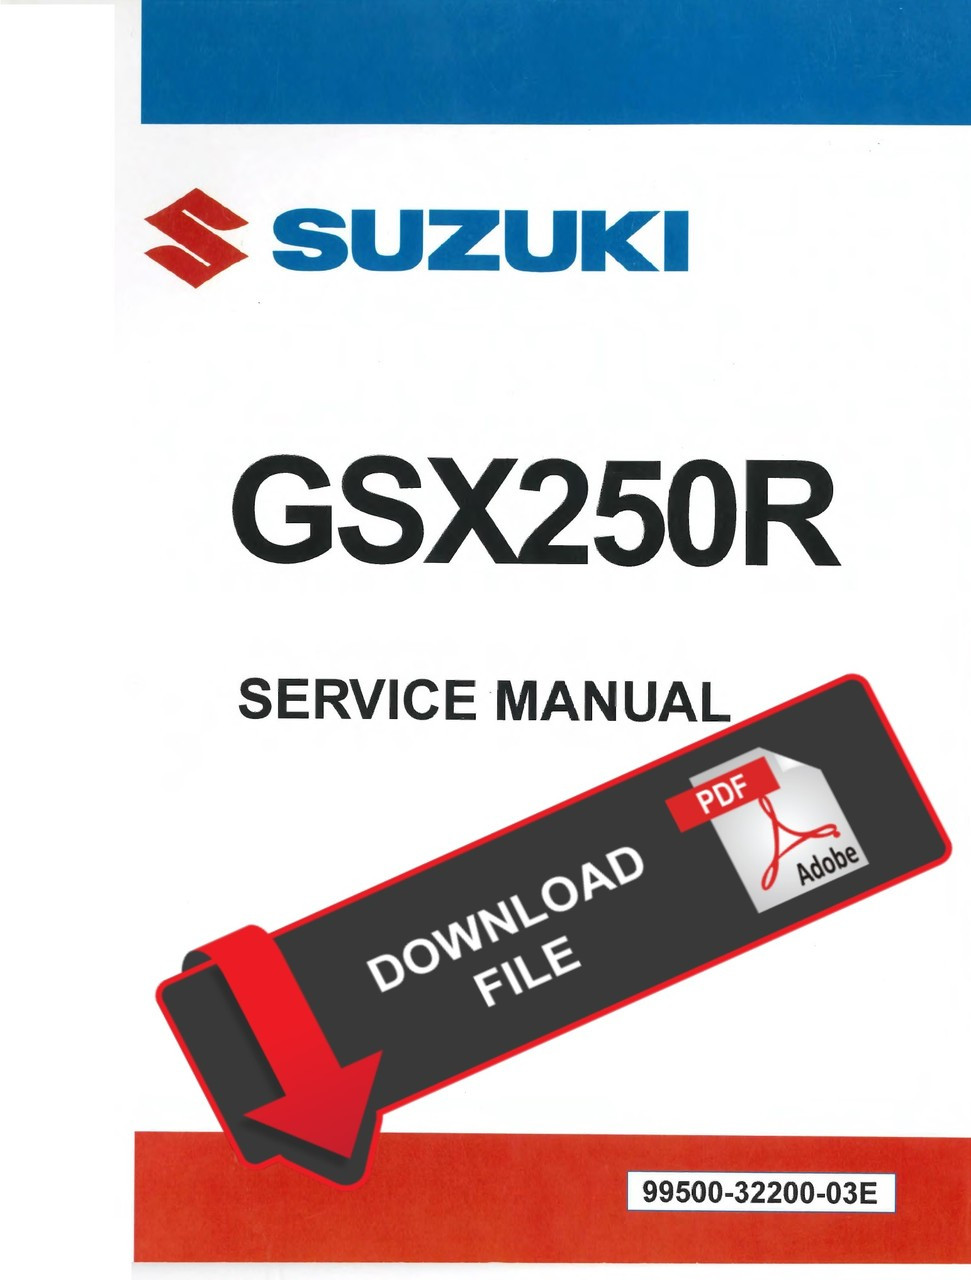 スズキ GSX250R サービスマニュアル - カタログ/マニュアル